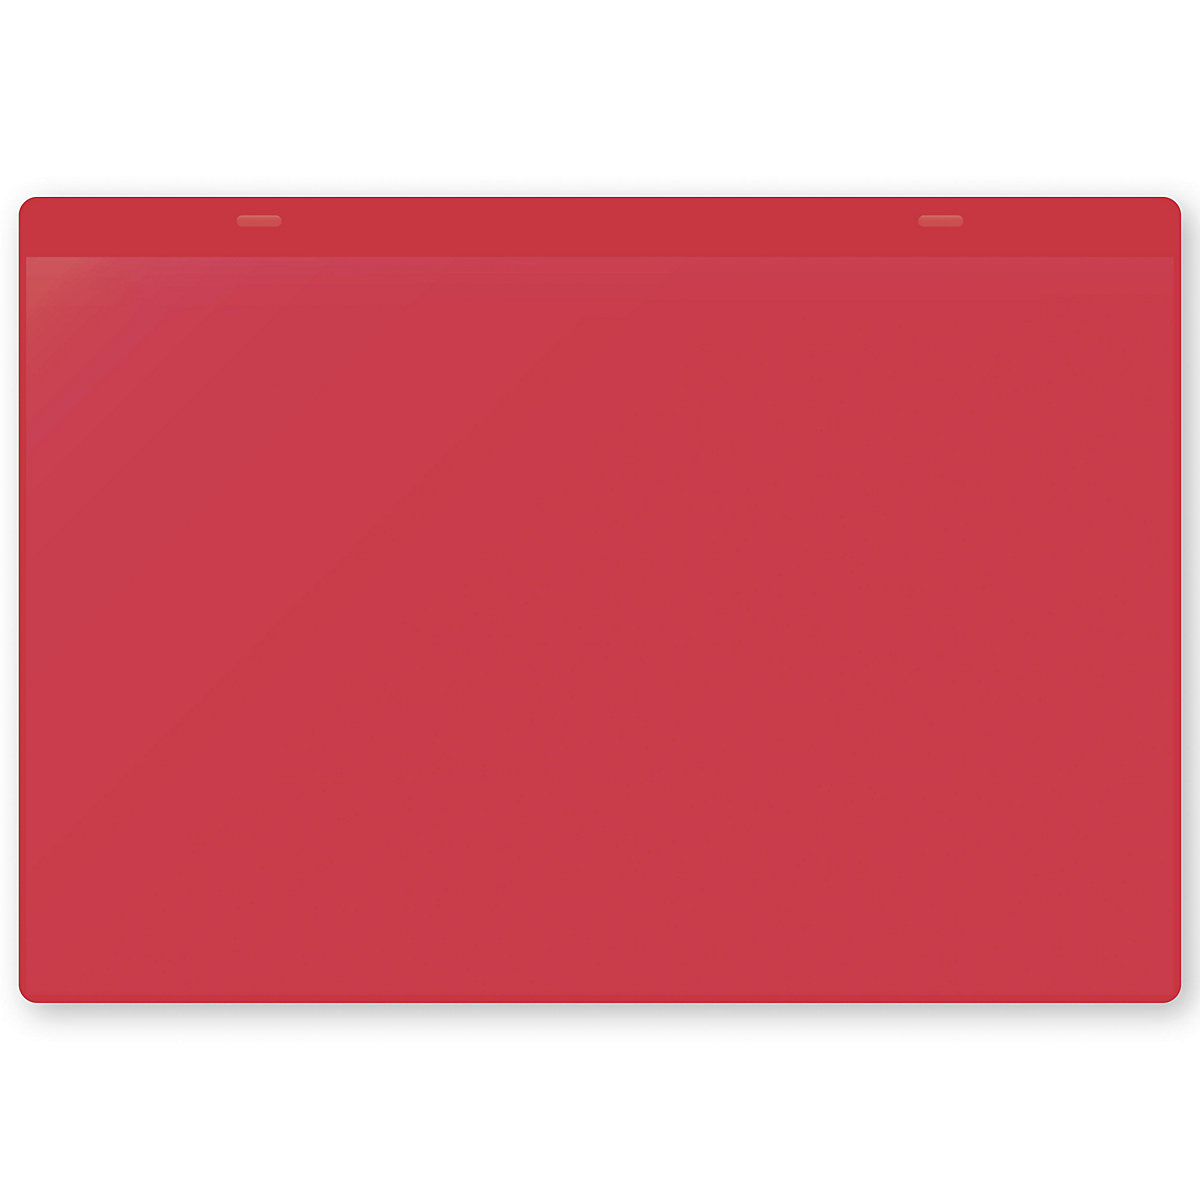 Dokumentumtartó tasakok akasztópánttal, DIN A4, fekvő, cs. e. 50 db, piros